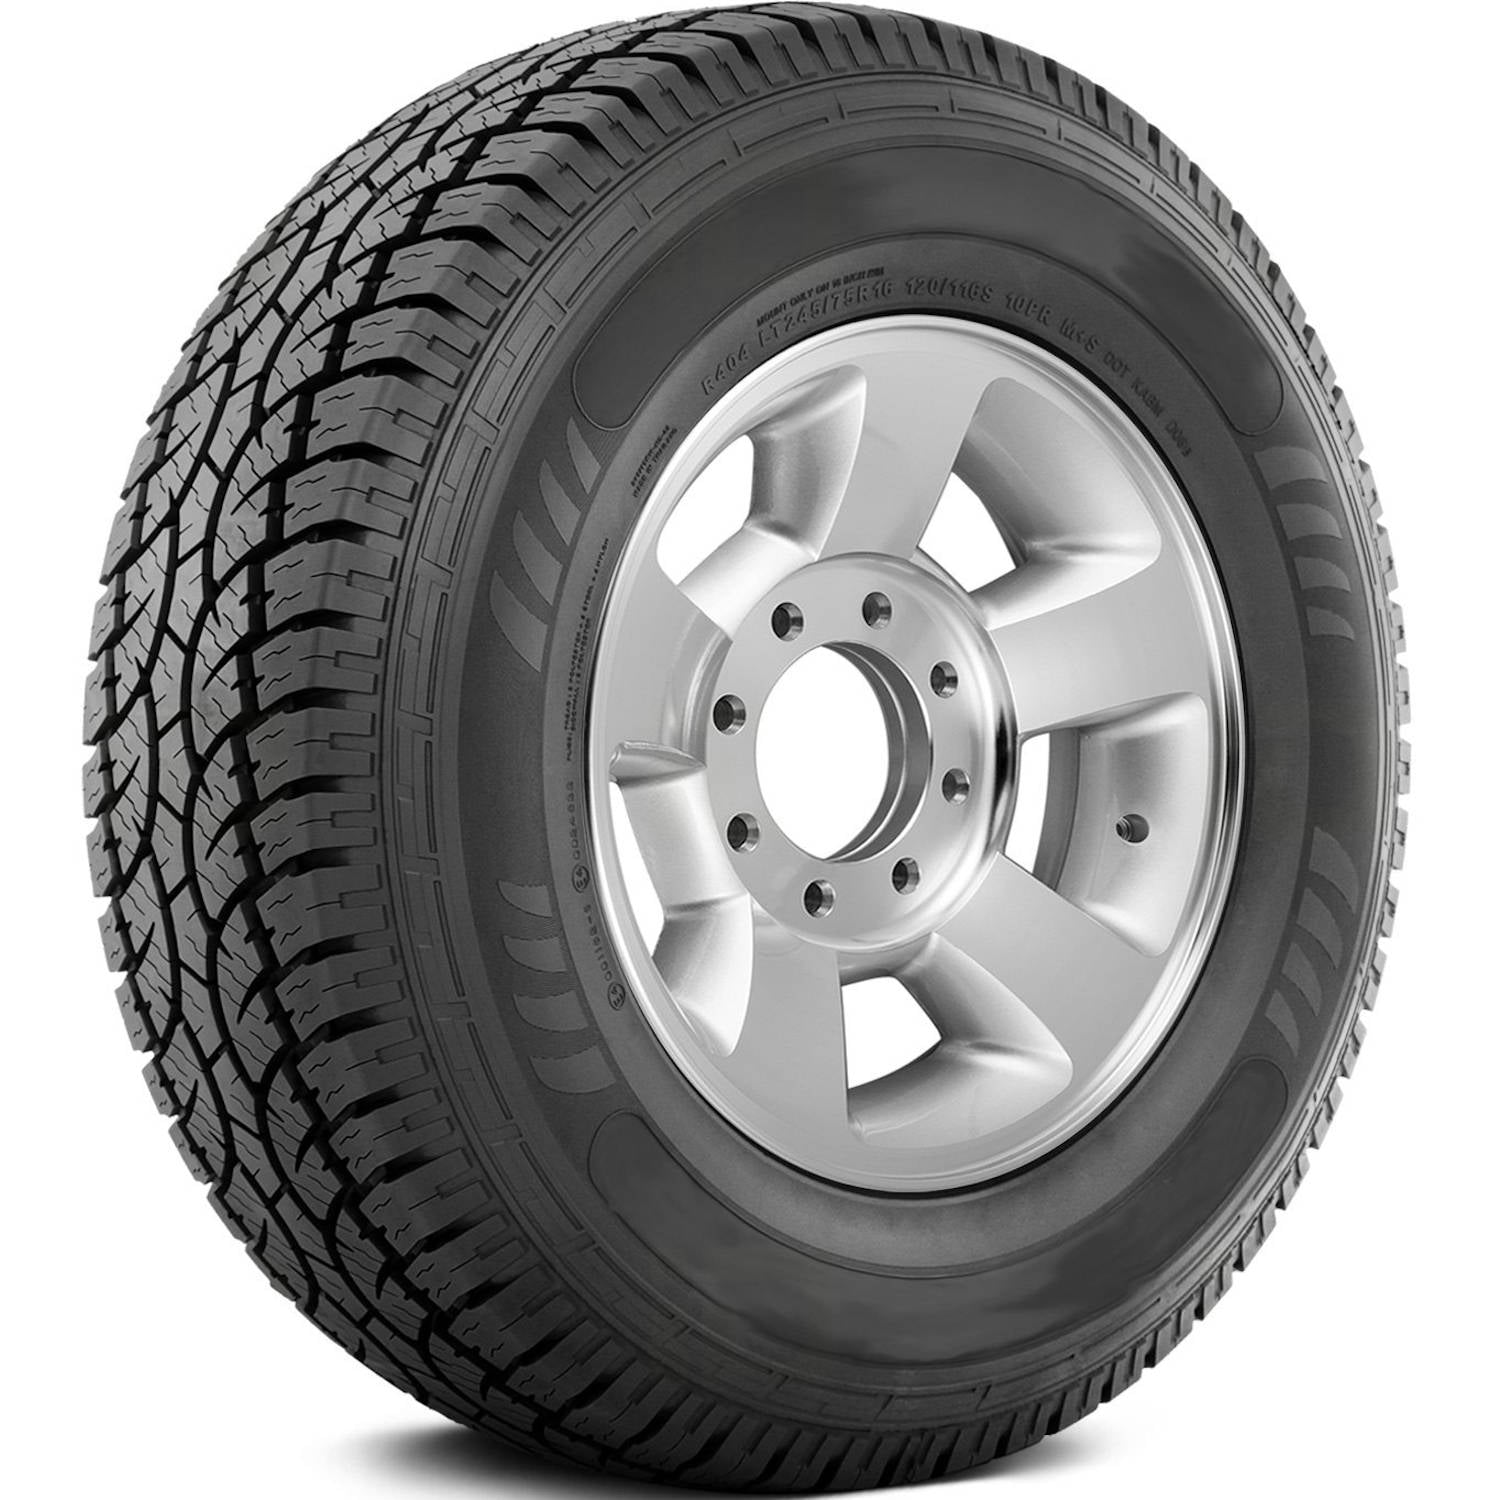 AMERICUS RUGGED ALL TERRAIN 31X10.50R15LT Tires